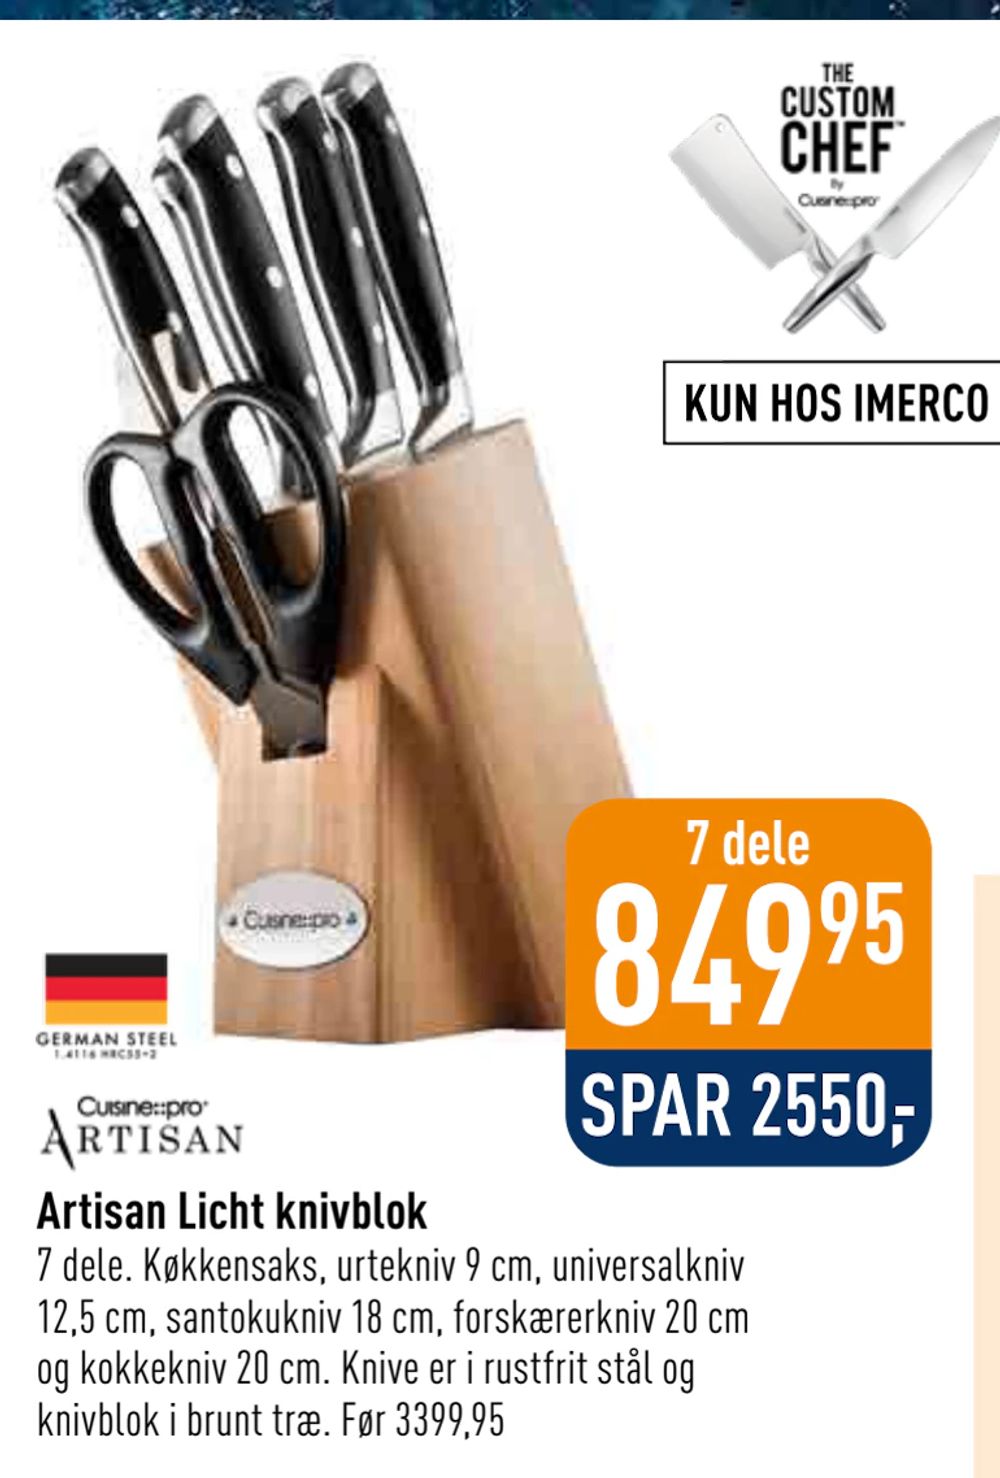 Tilbud på Artisan Licht knivblok fra Imerco til 849,95 kr.